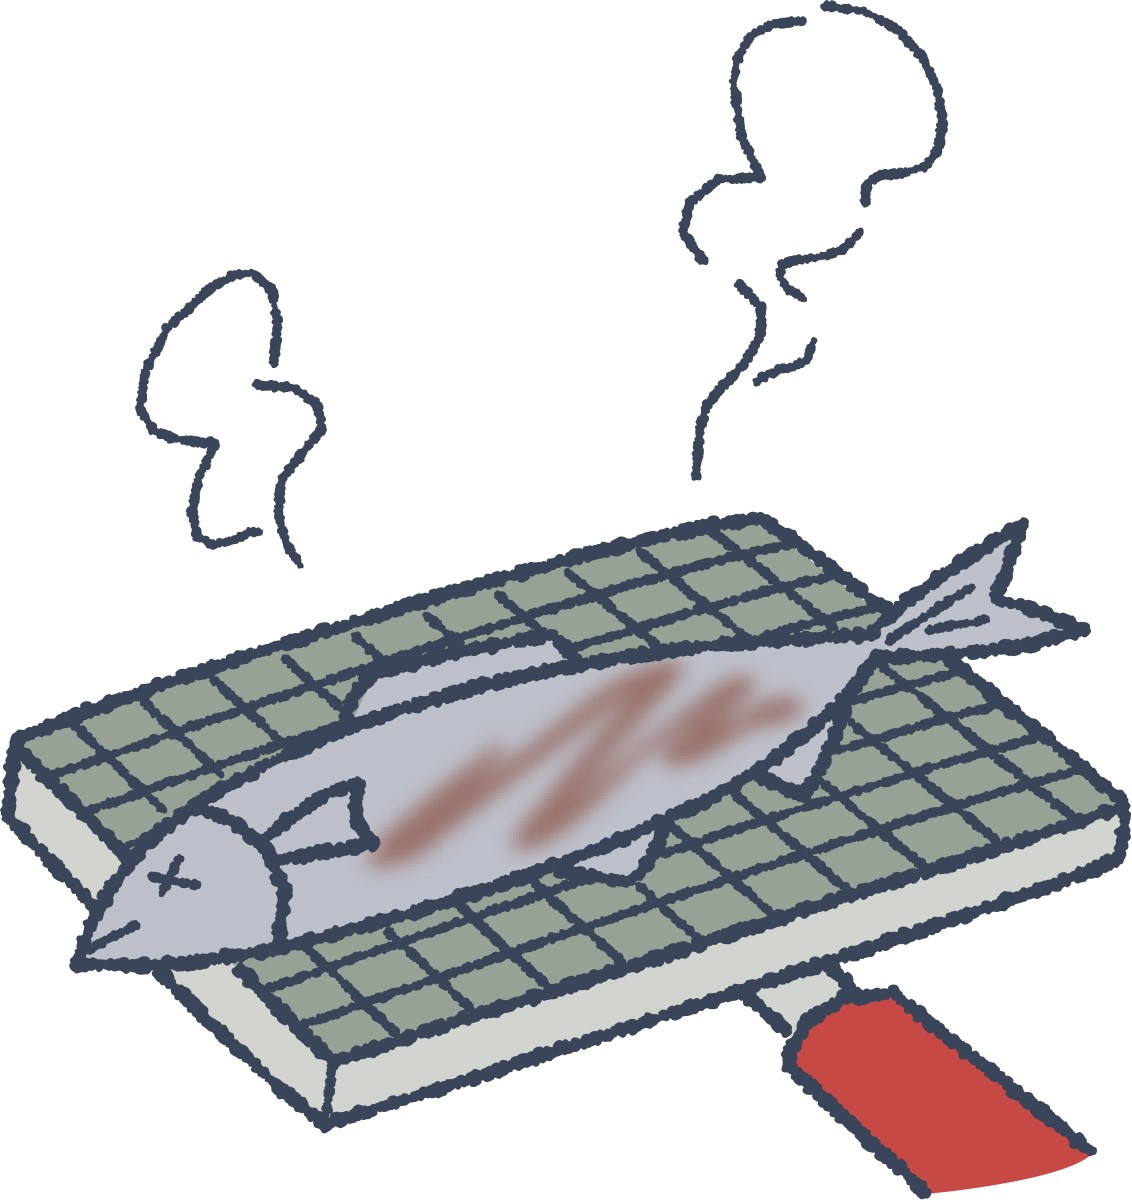 焼いた魚がパサパサになってしまう理由とふっくら焼き上げるコツ